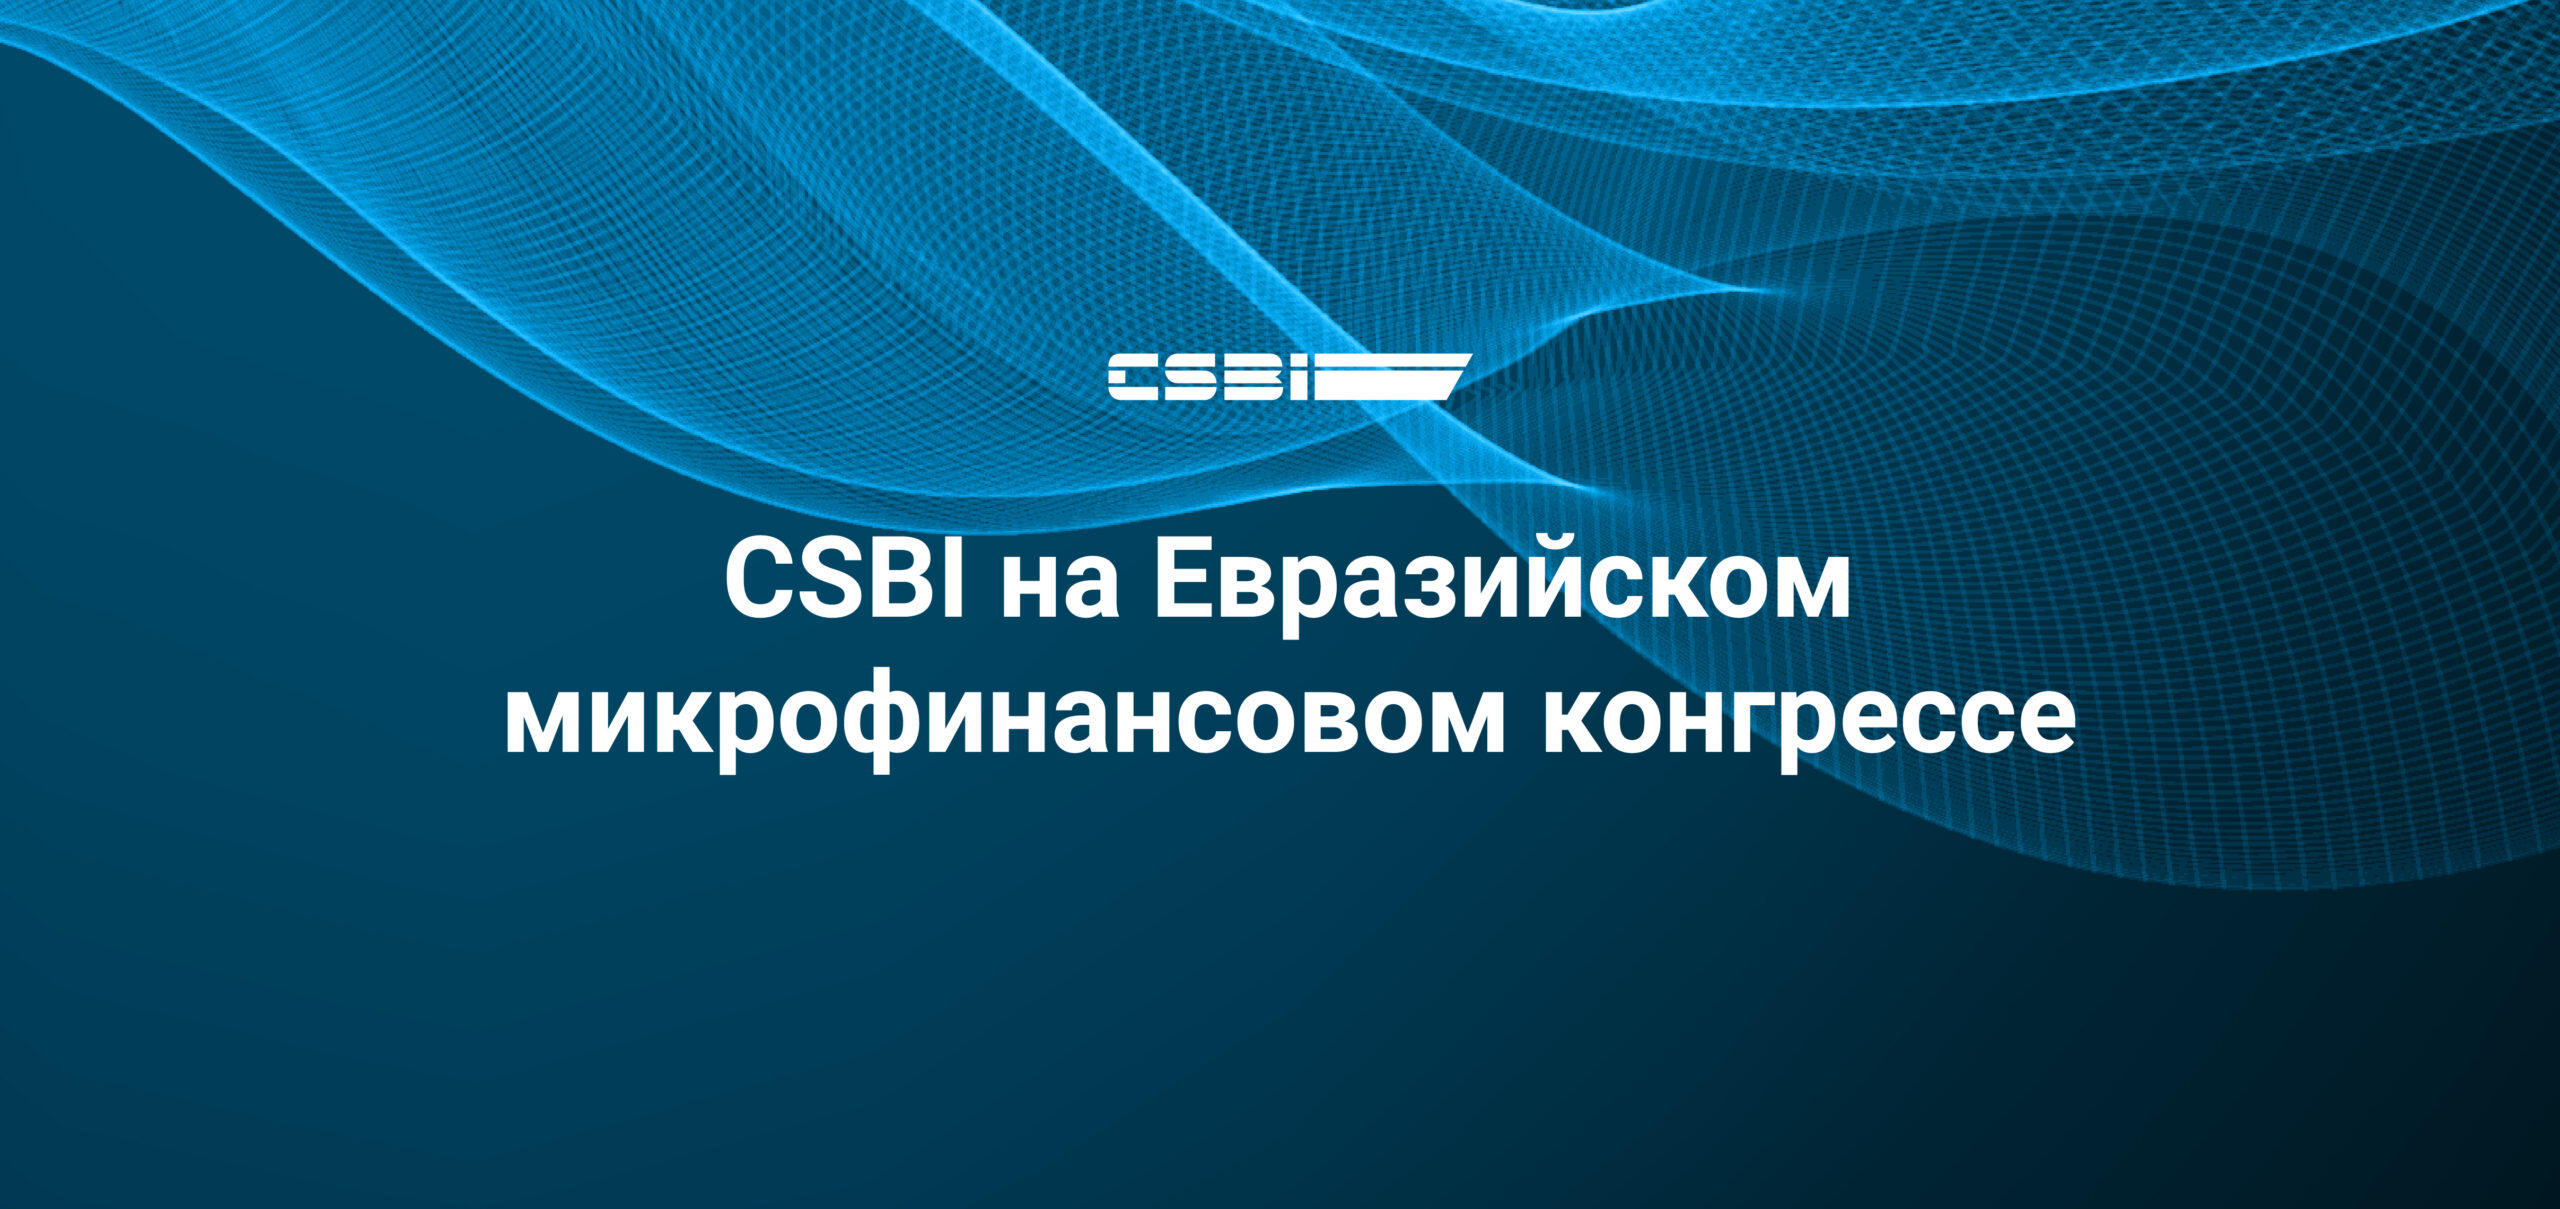 CSBI на Евразийском микрофинансовом конгрессе